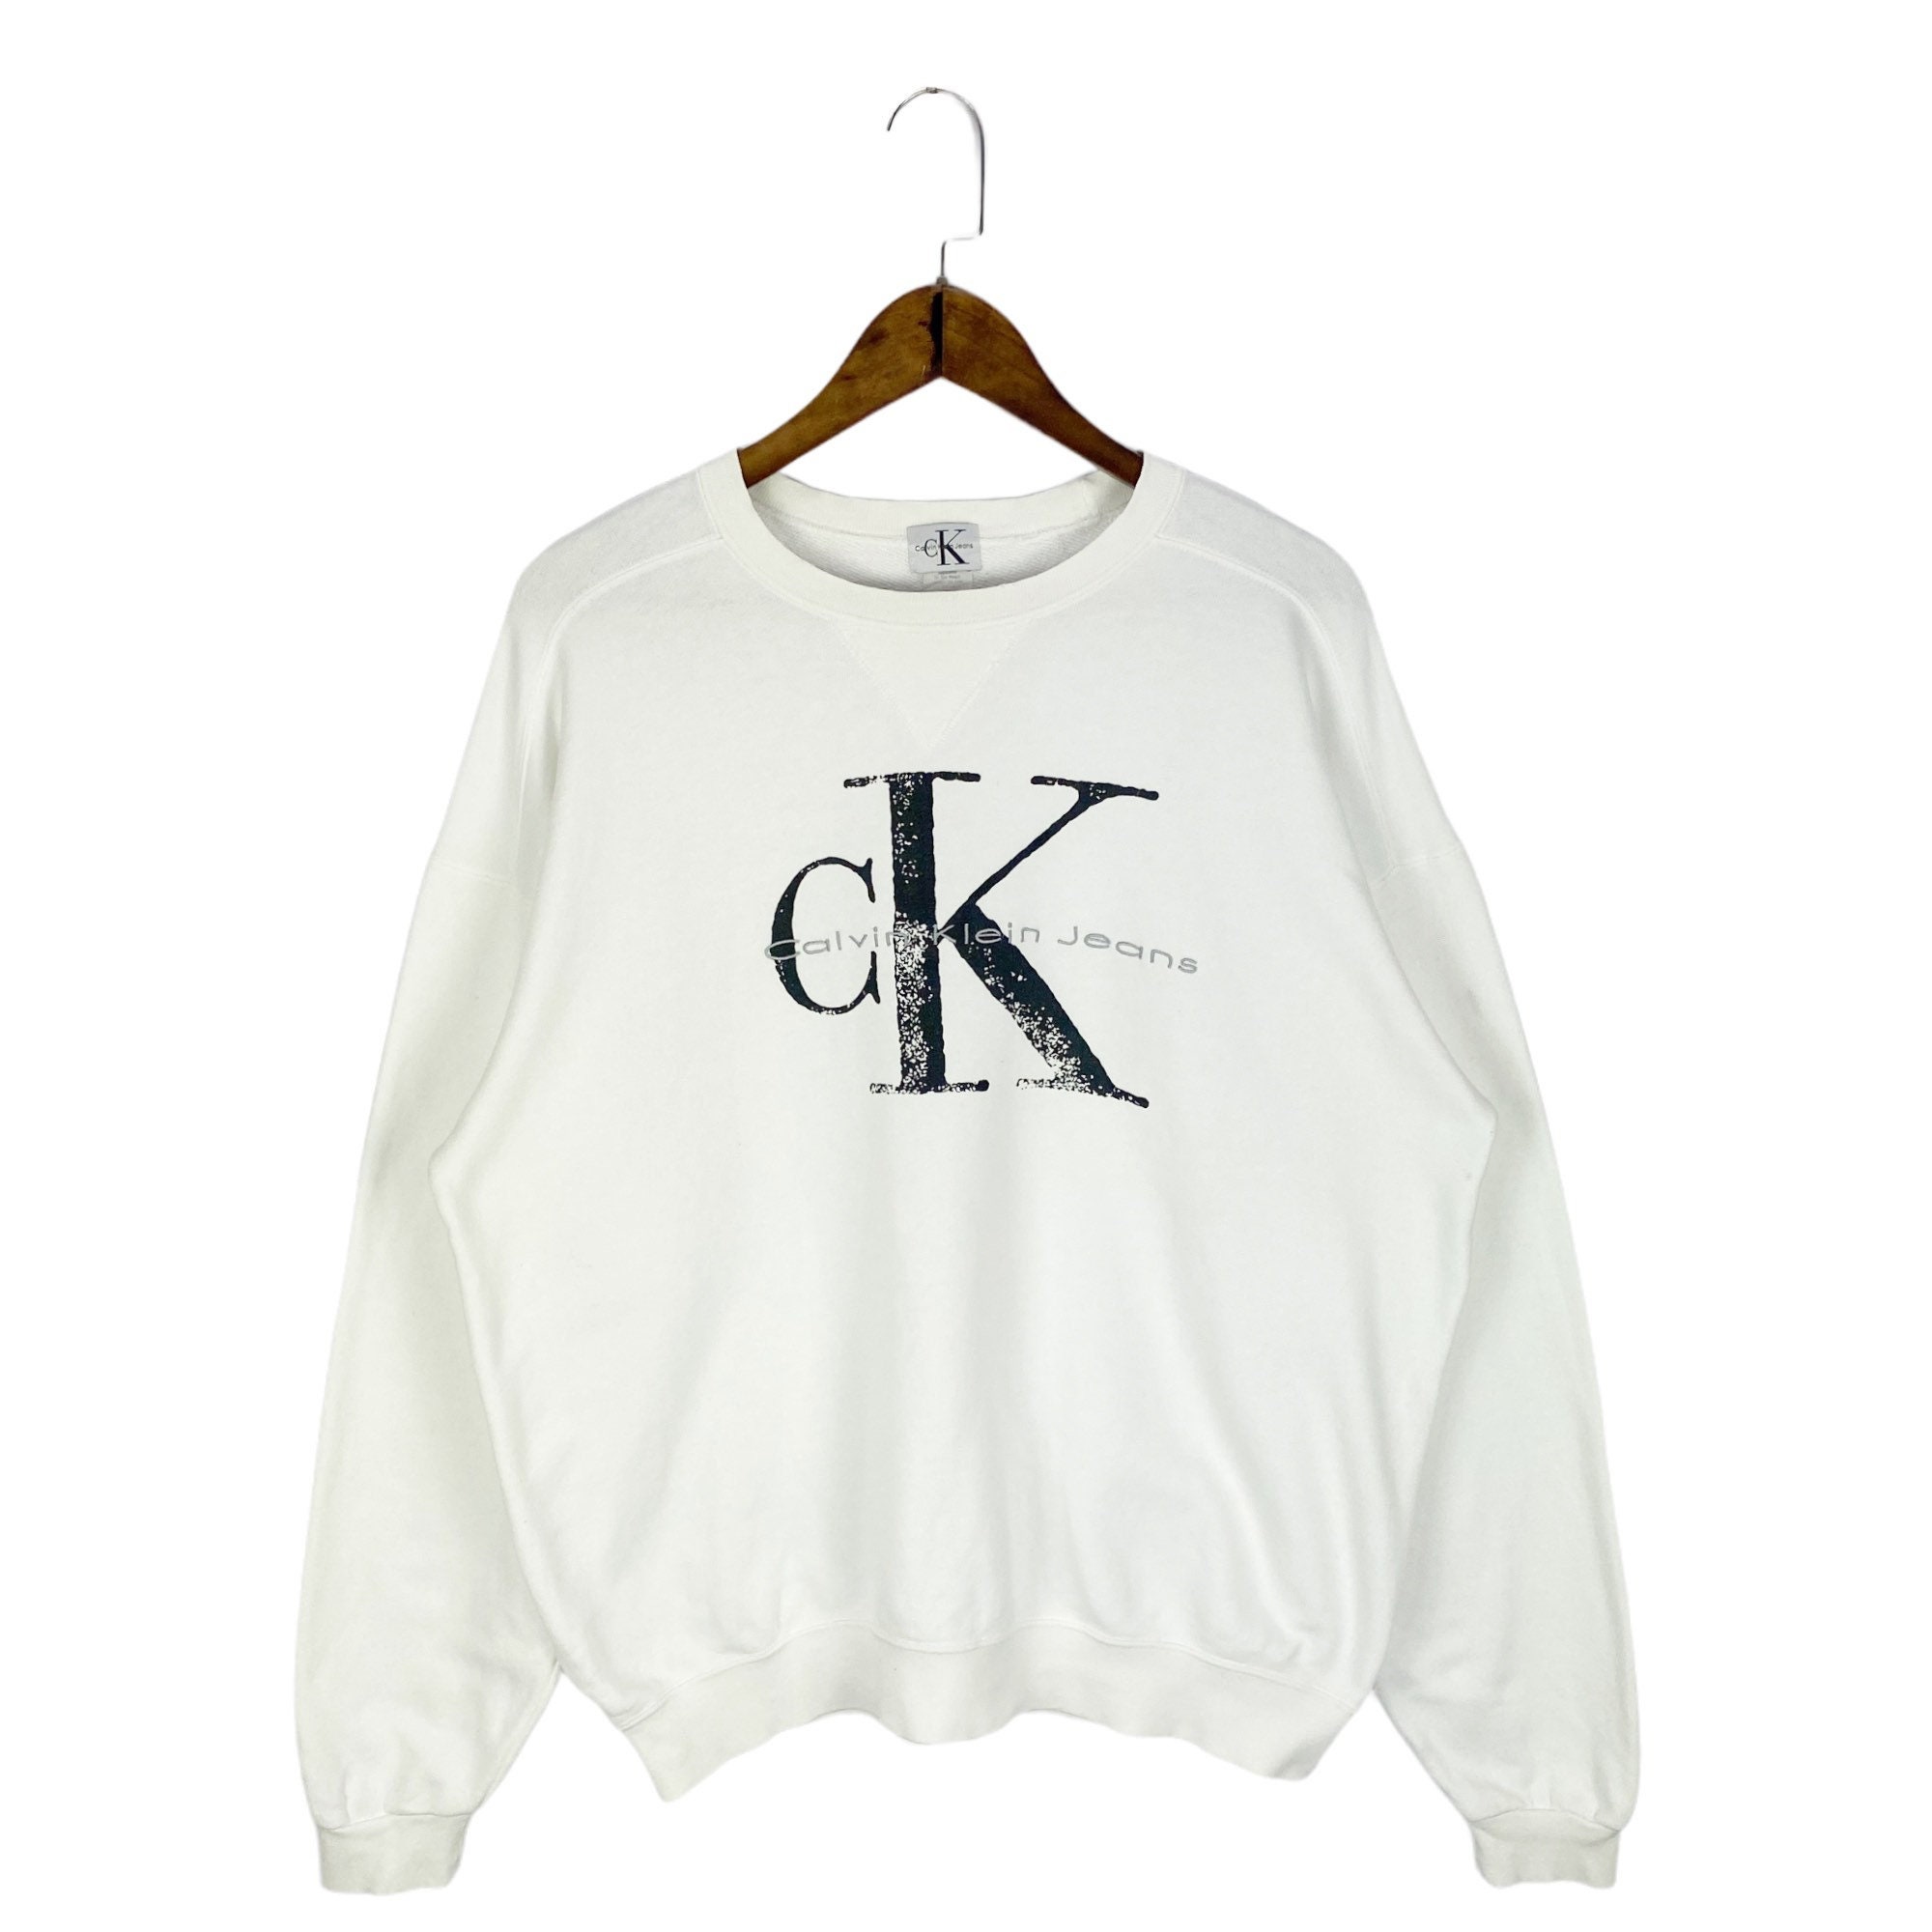 Vintage 90s Calvin Klein Crewneck Sweatshirt Made in USA White - Etsy